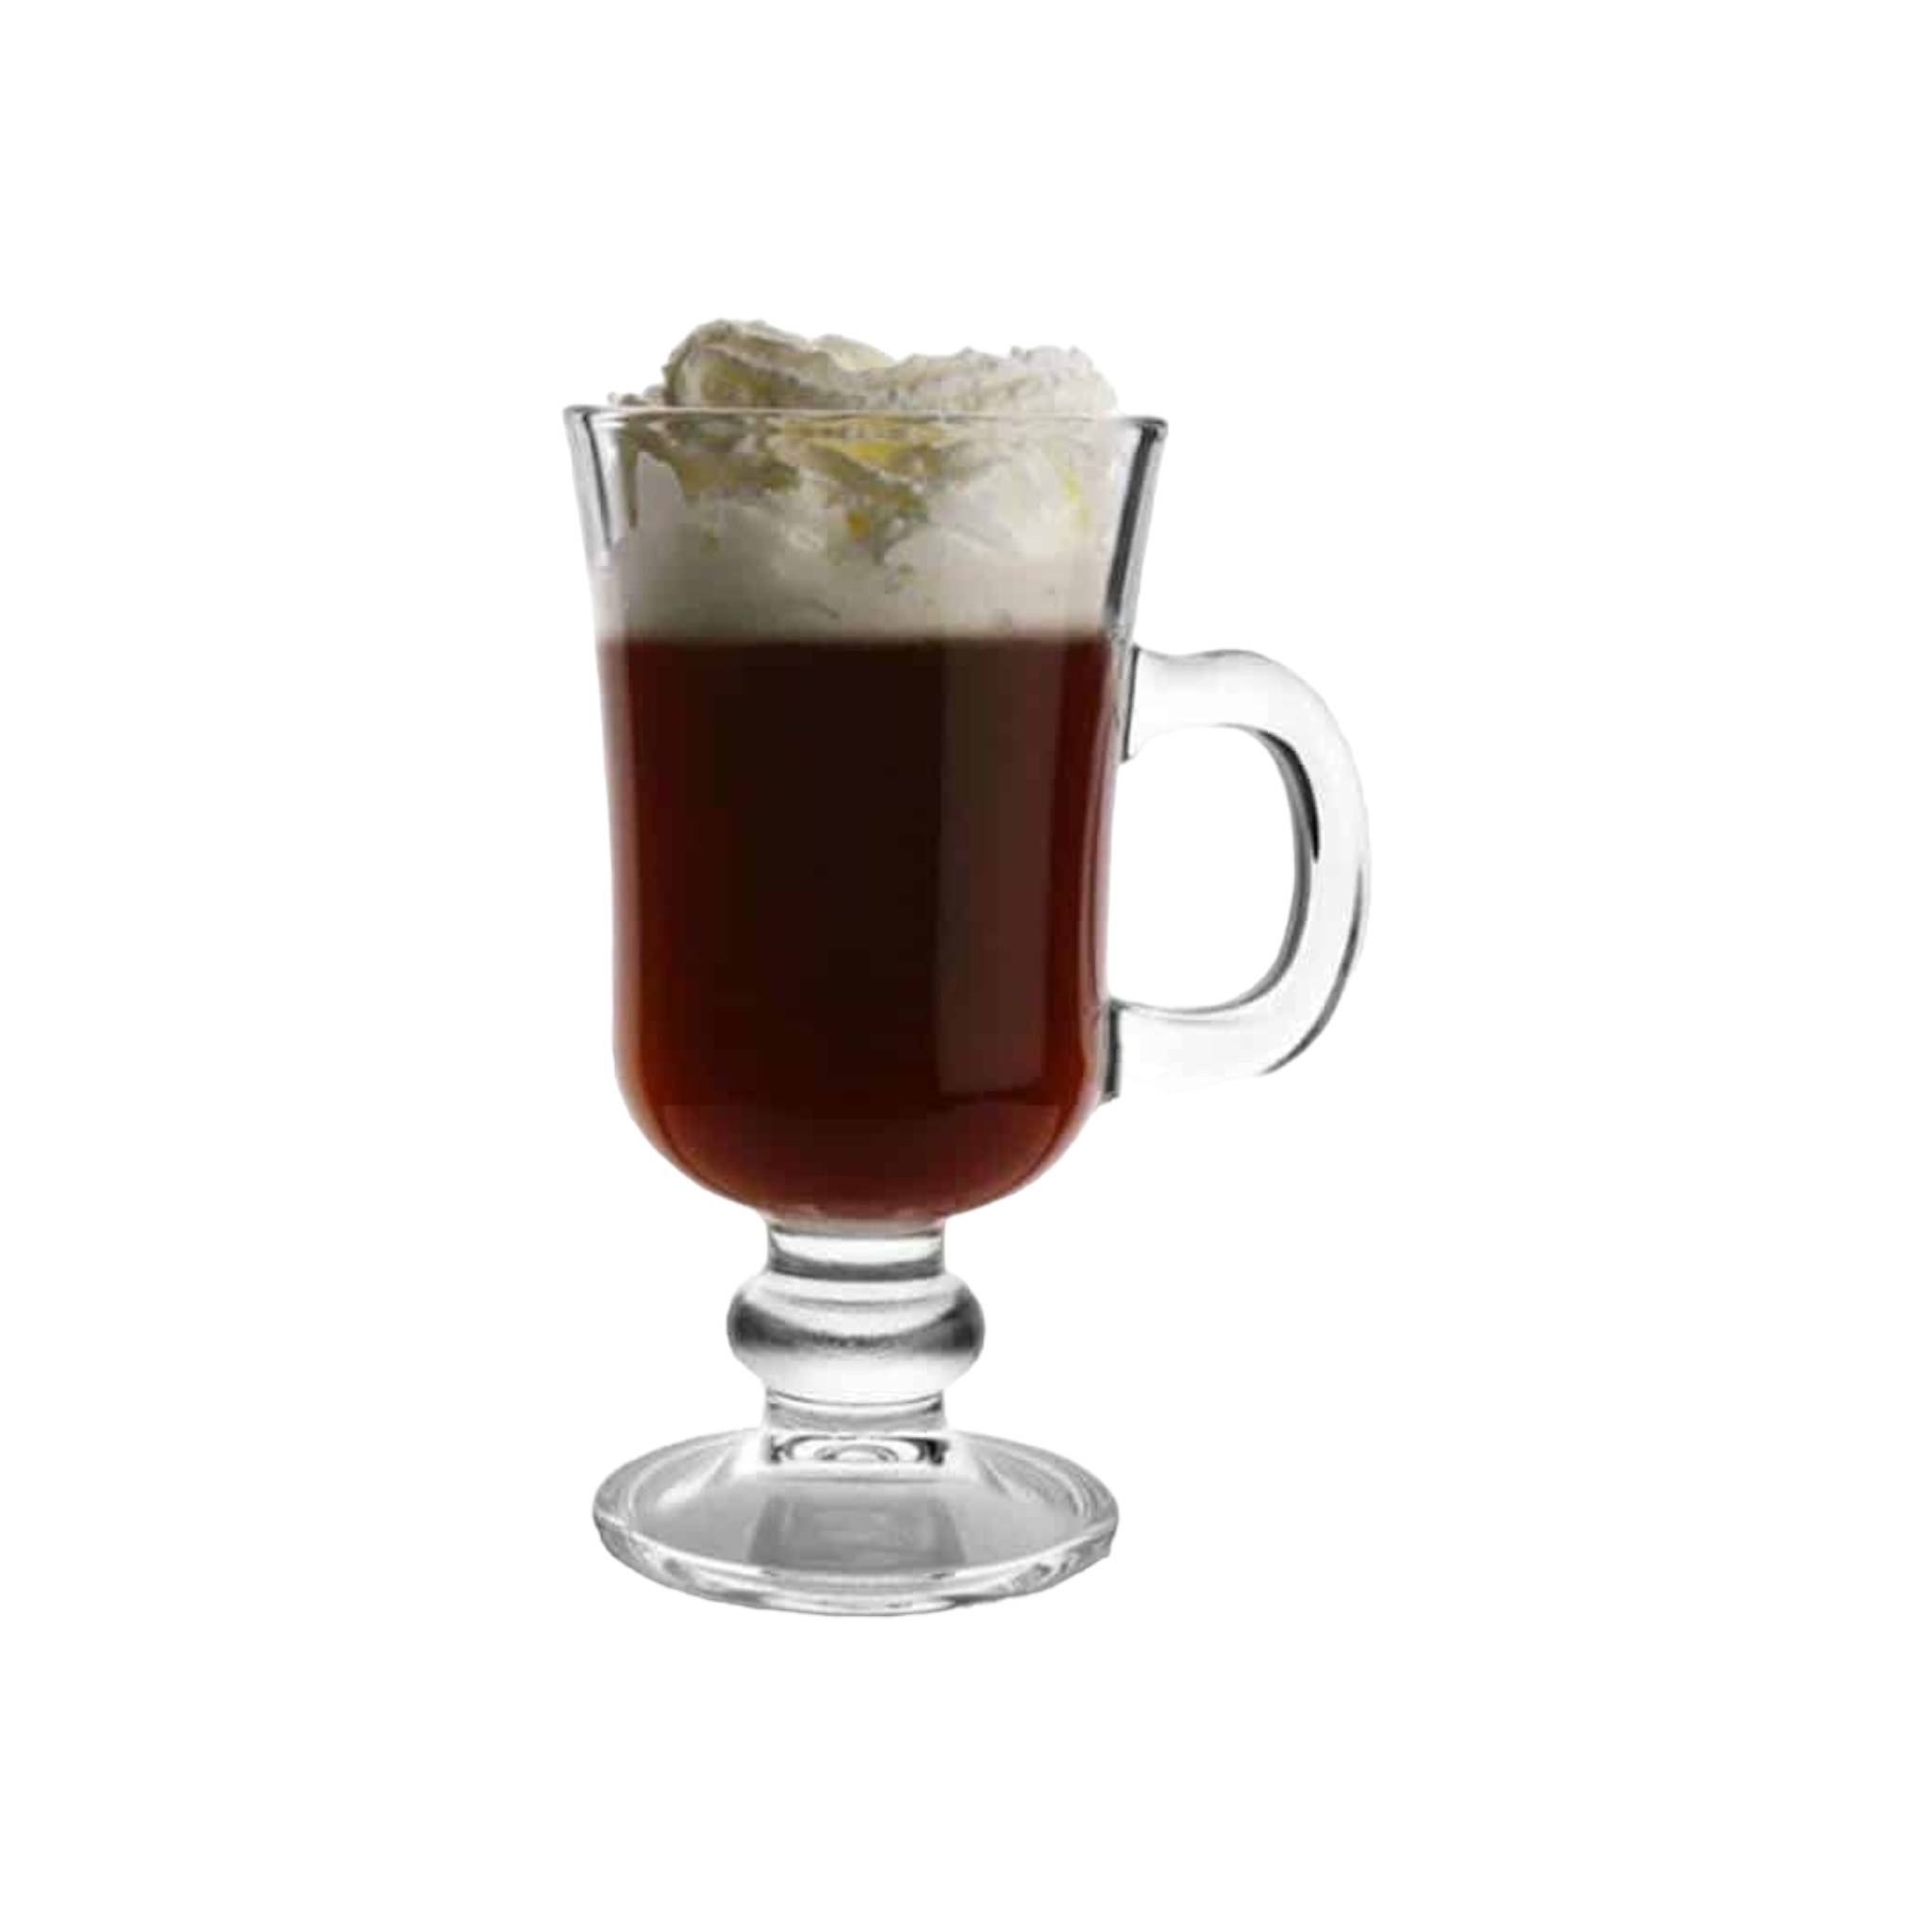 Pasabahce Glass Irish Coffee Mug 230ml 2pc Set 23525